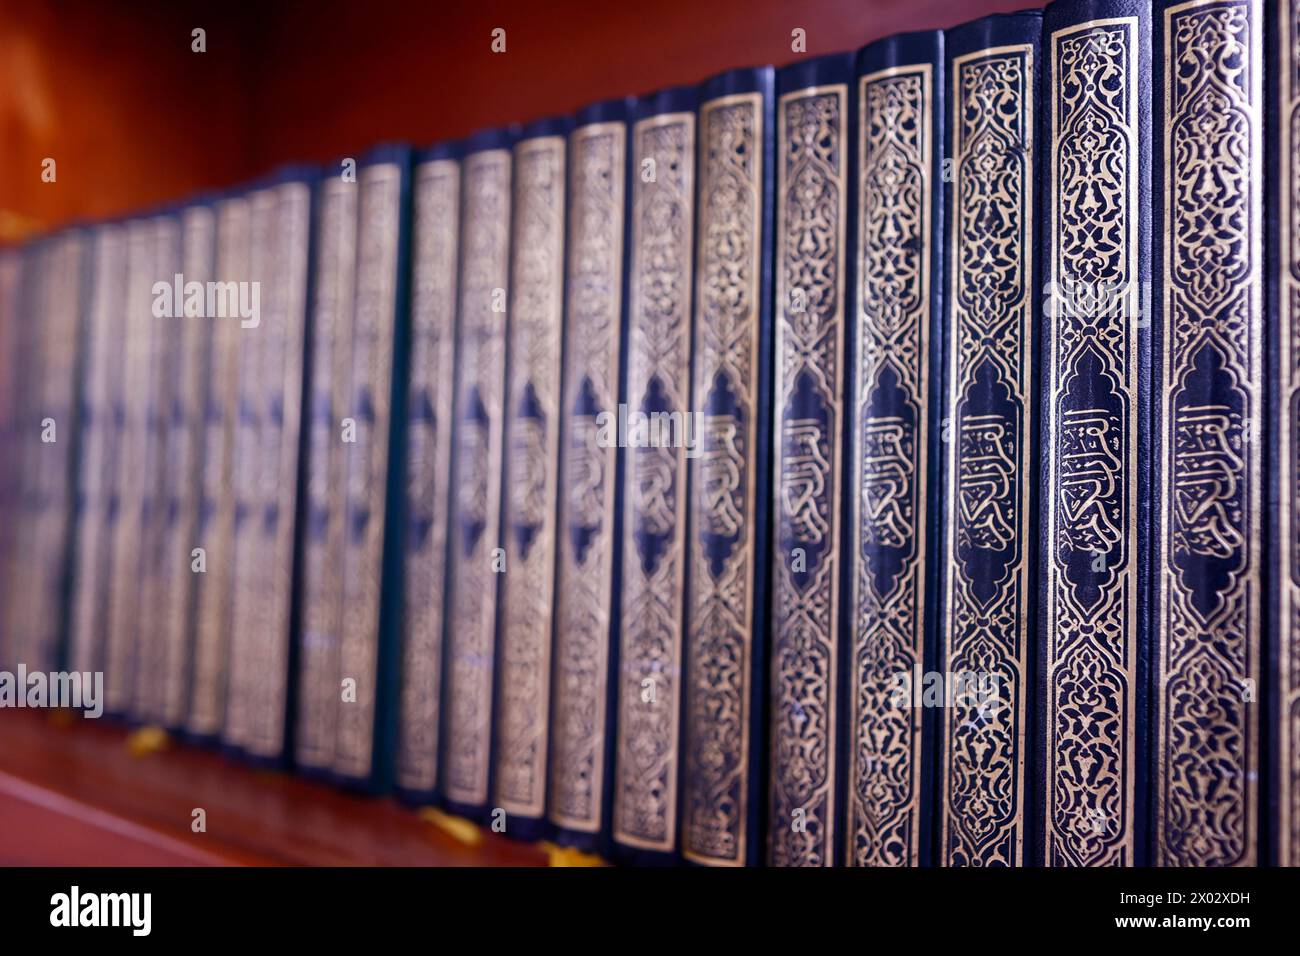 Rangée de livres du Coran sacré dans une mosquée, symbole islamique, Phnom Penh, Cambodge, Indochine, Asie du Sud-est, Asie Banque D'Images